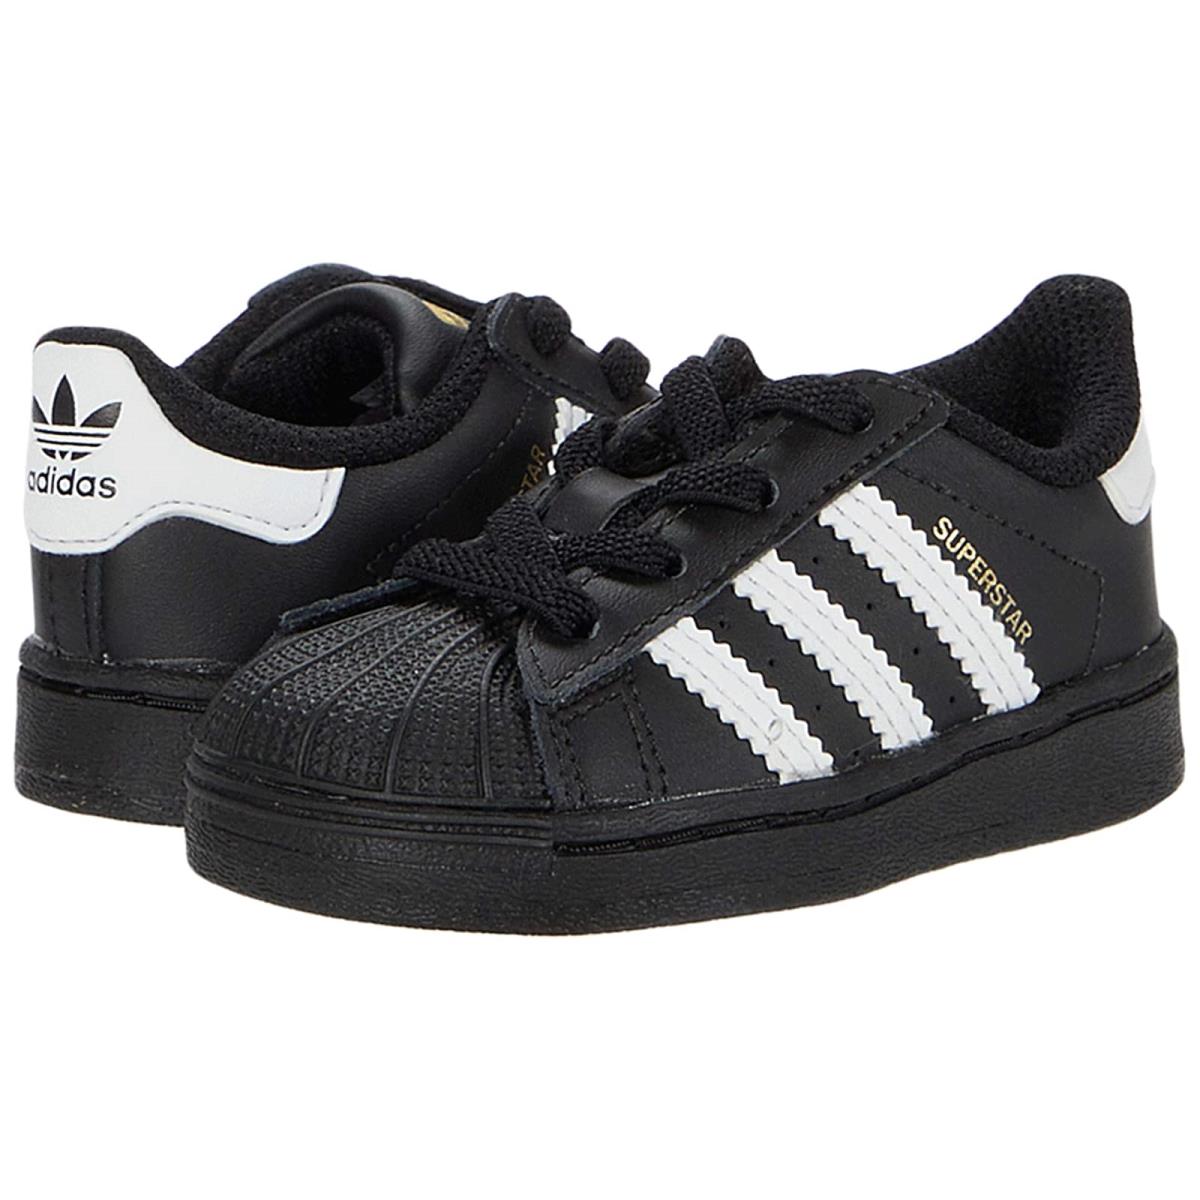 Children Unisex Shoes Adidas Originals Kids Superstar EL Infant/toddler Black/White/Black